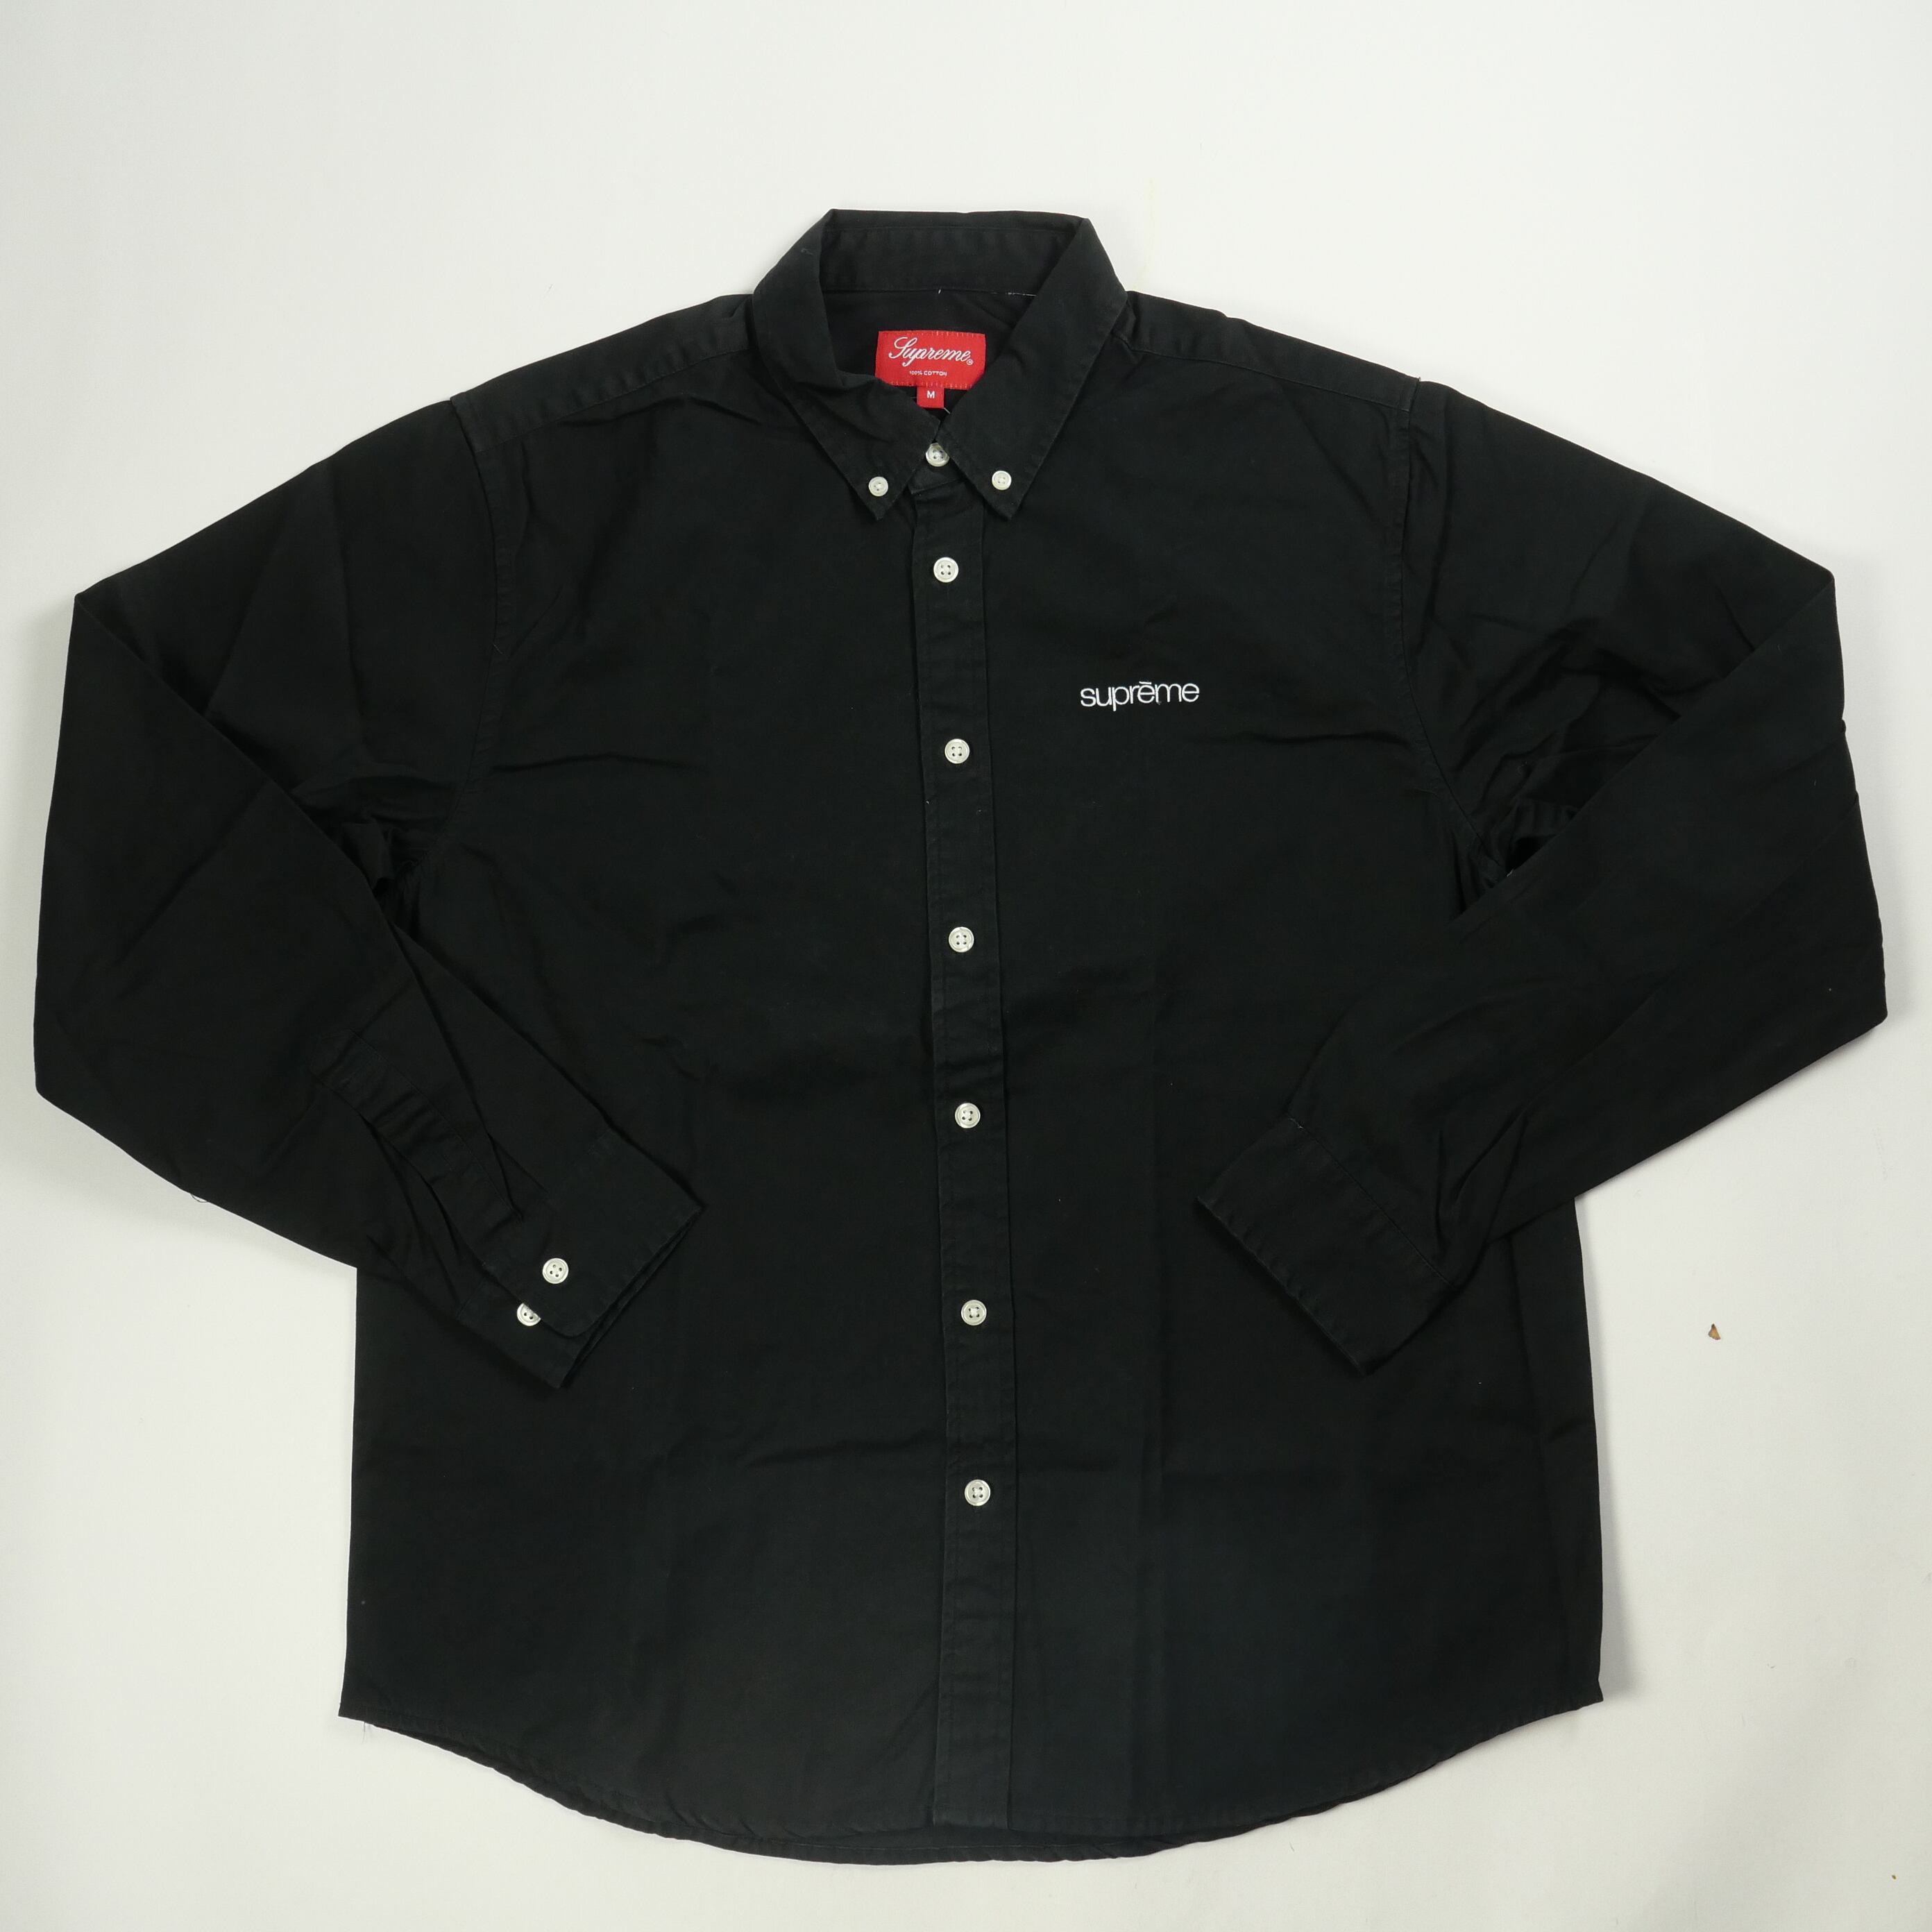 シュプリーム Oxford Shirt 
サイズ M
新品
カラー ブラック